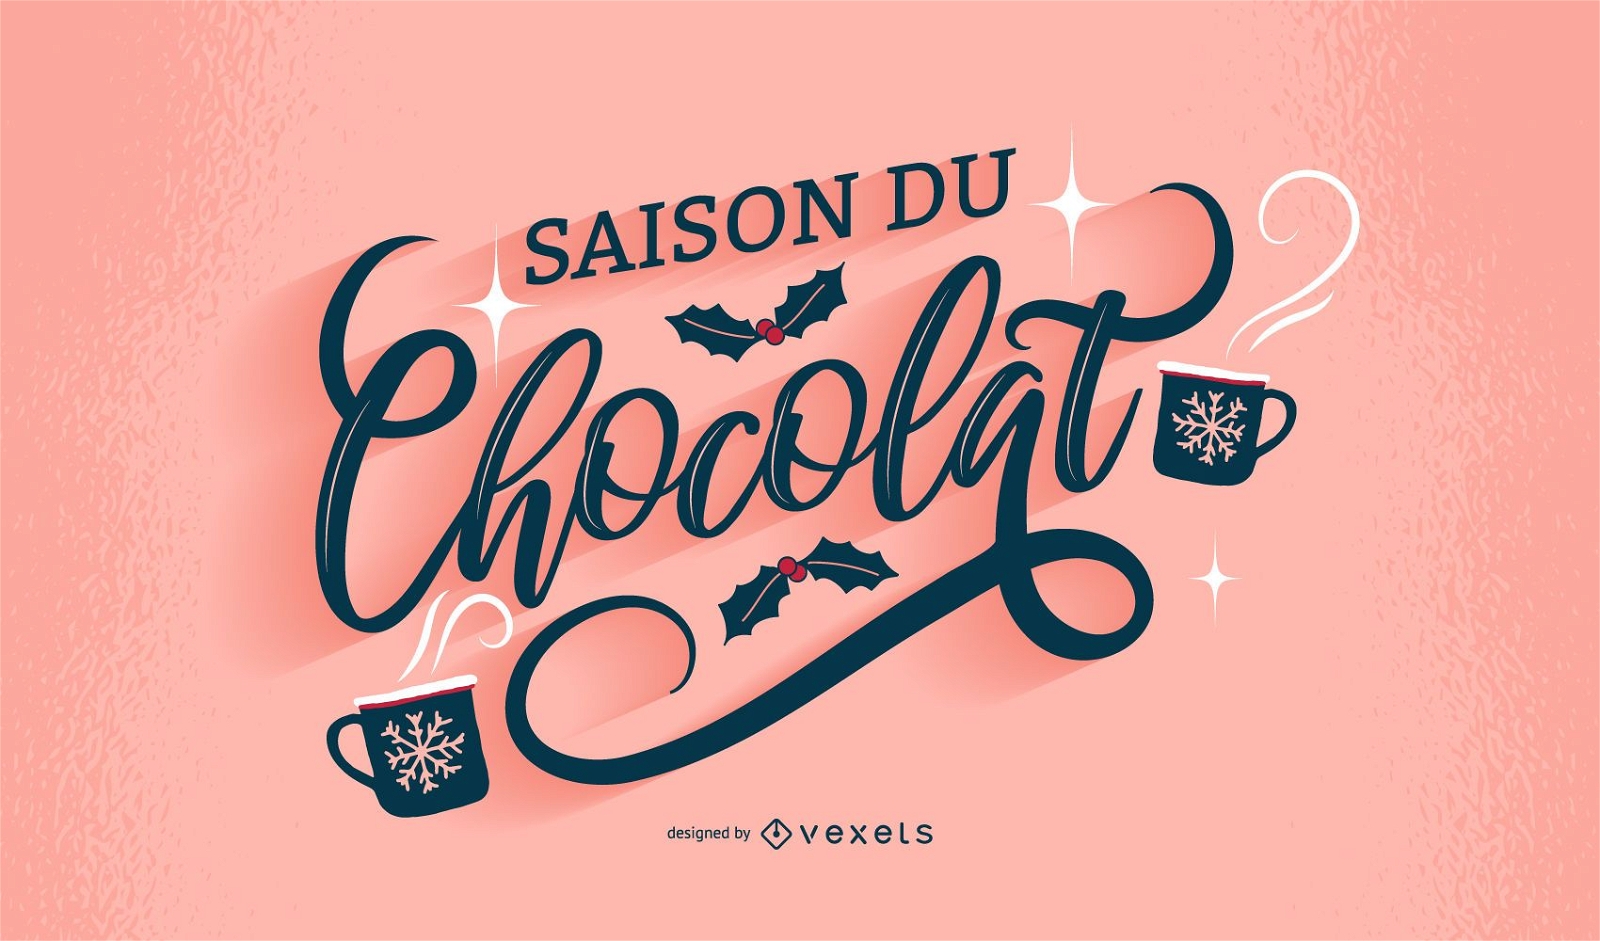 Design de letras francesas da estação do chocolate